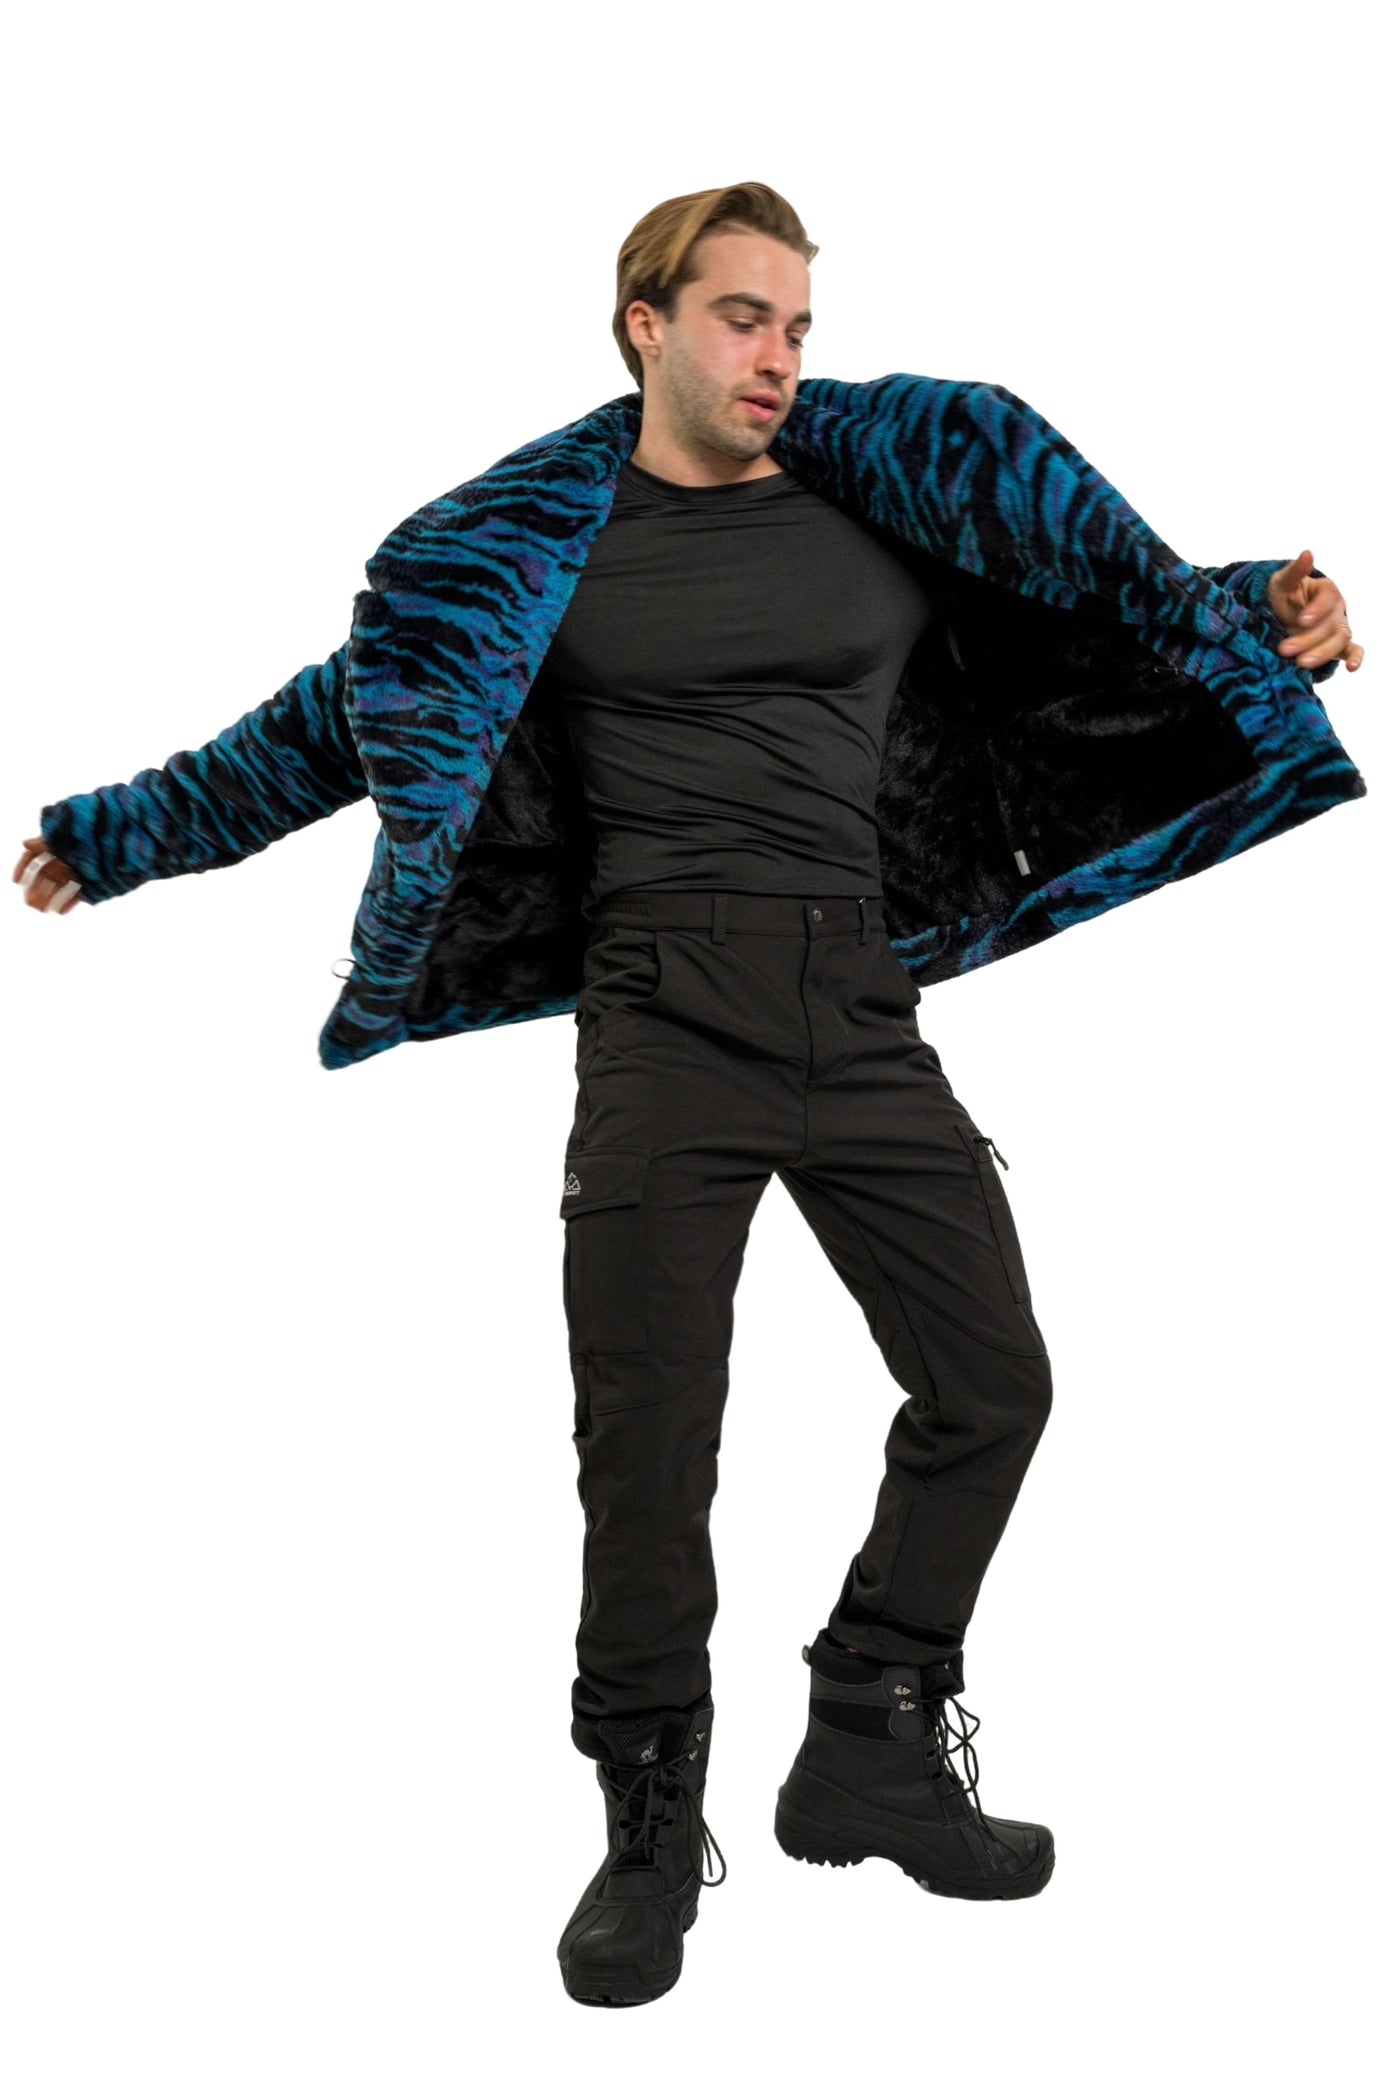 Men's Short Cozy Coat in "Electric Tiger"